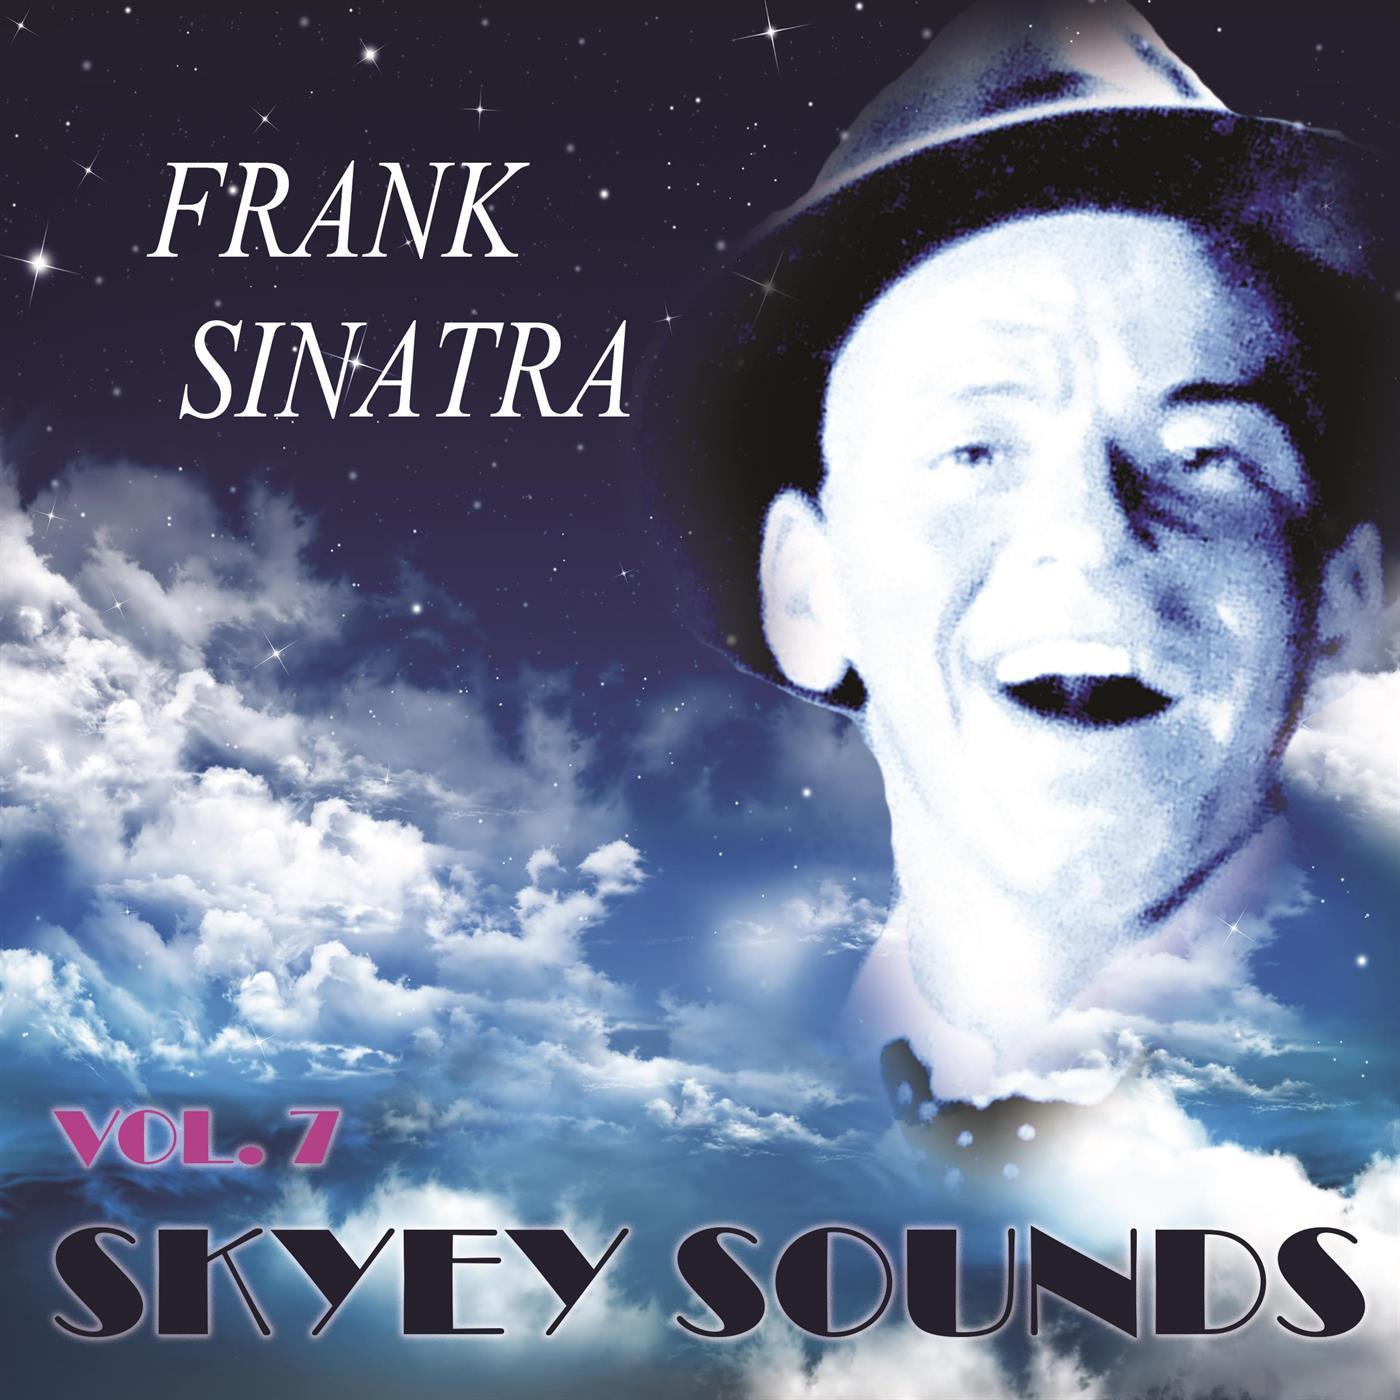 Skyey Sounds Vol. 7